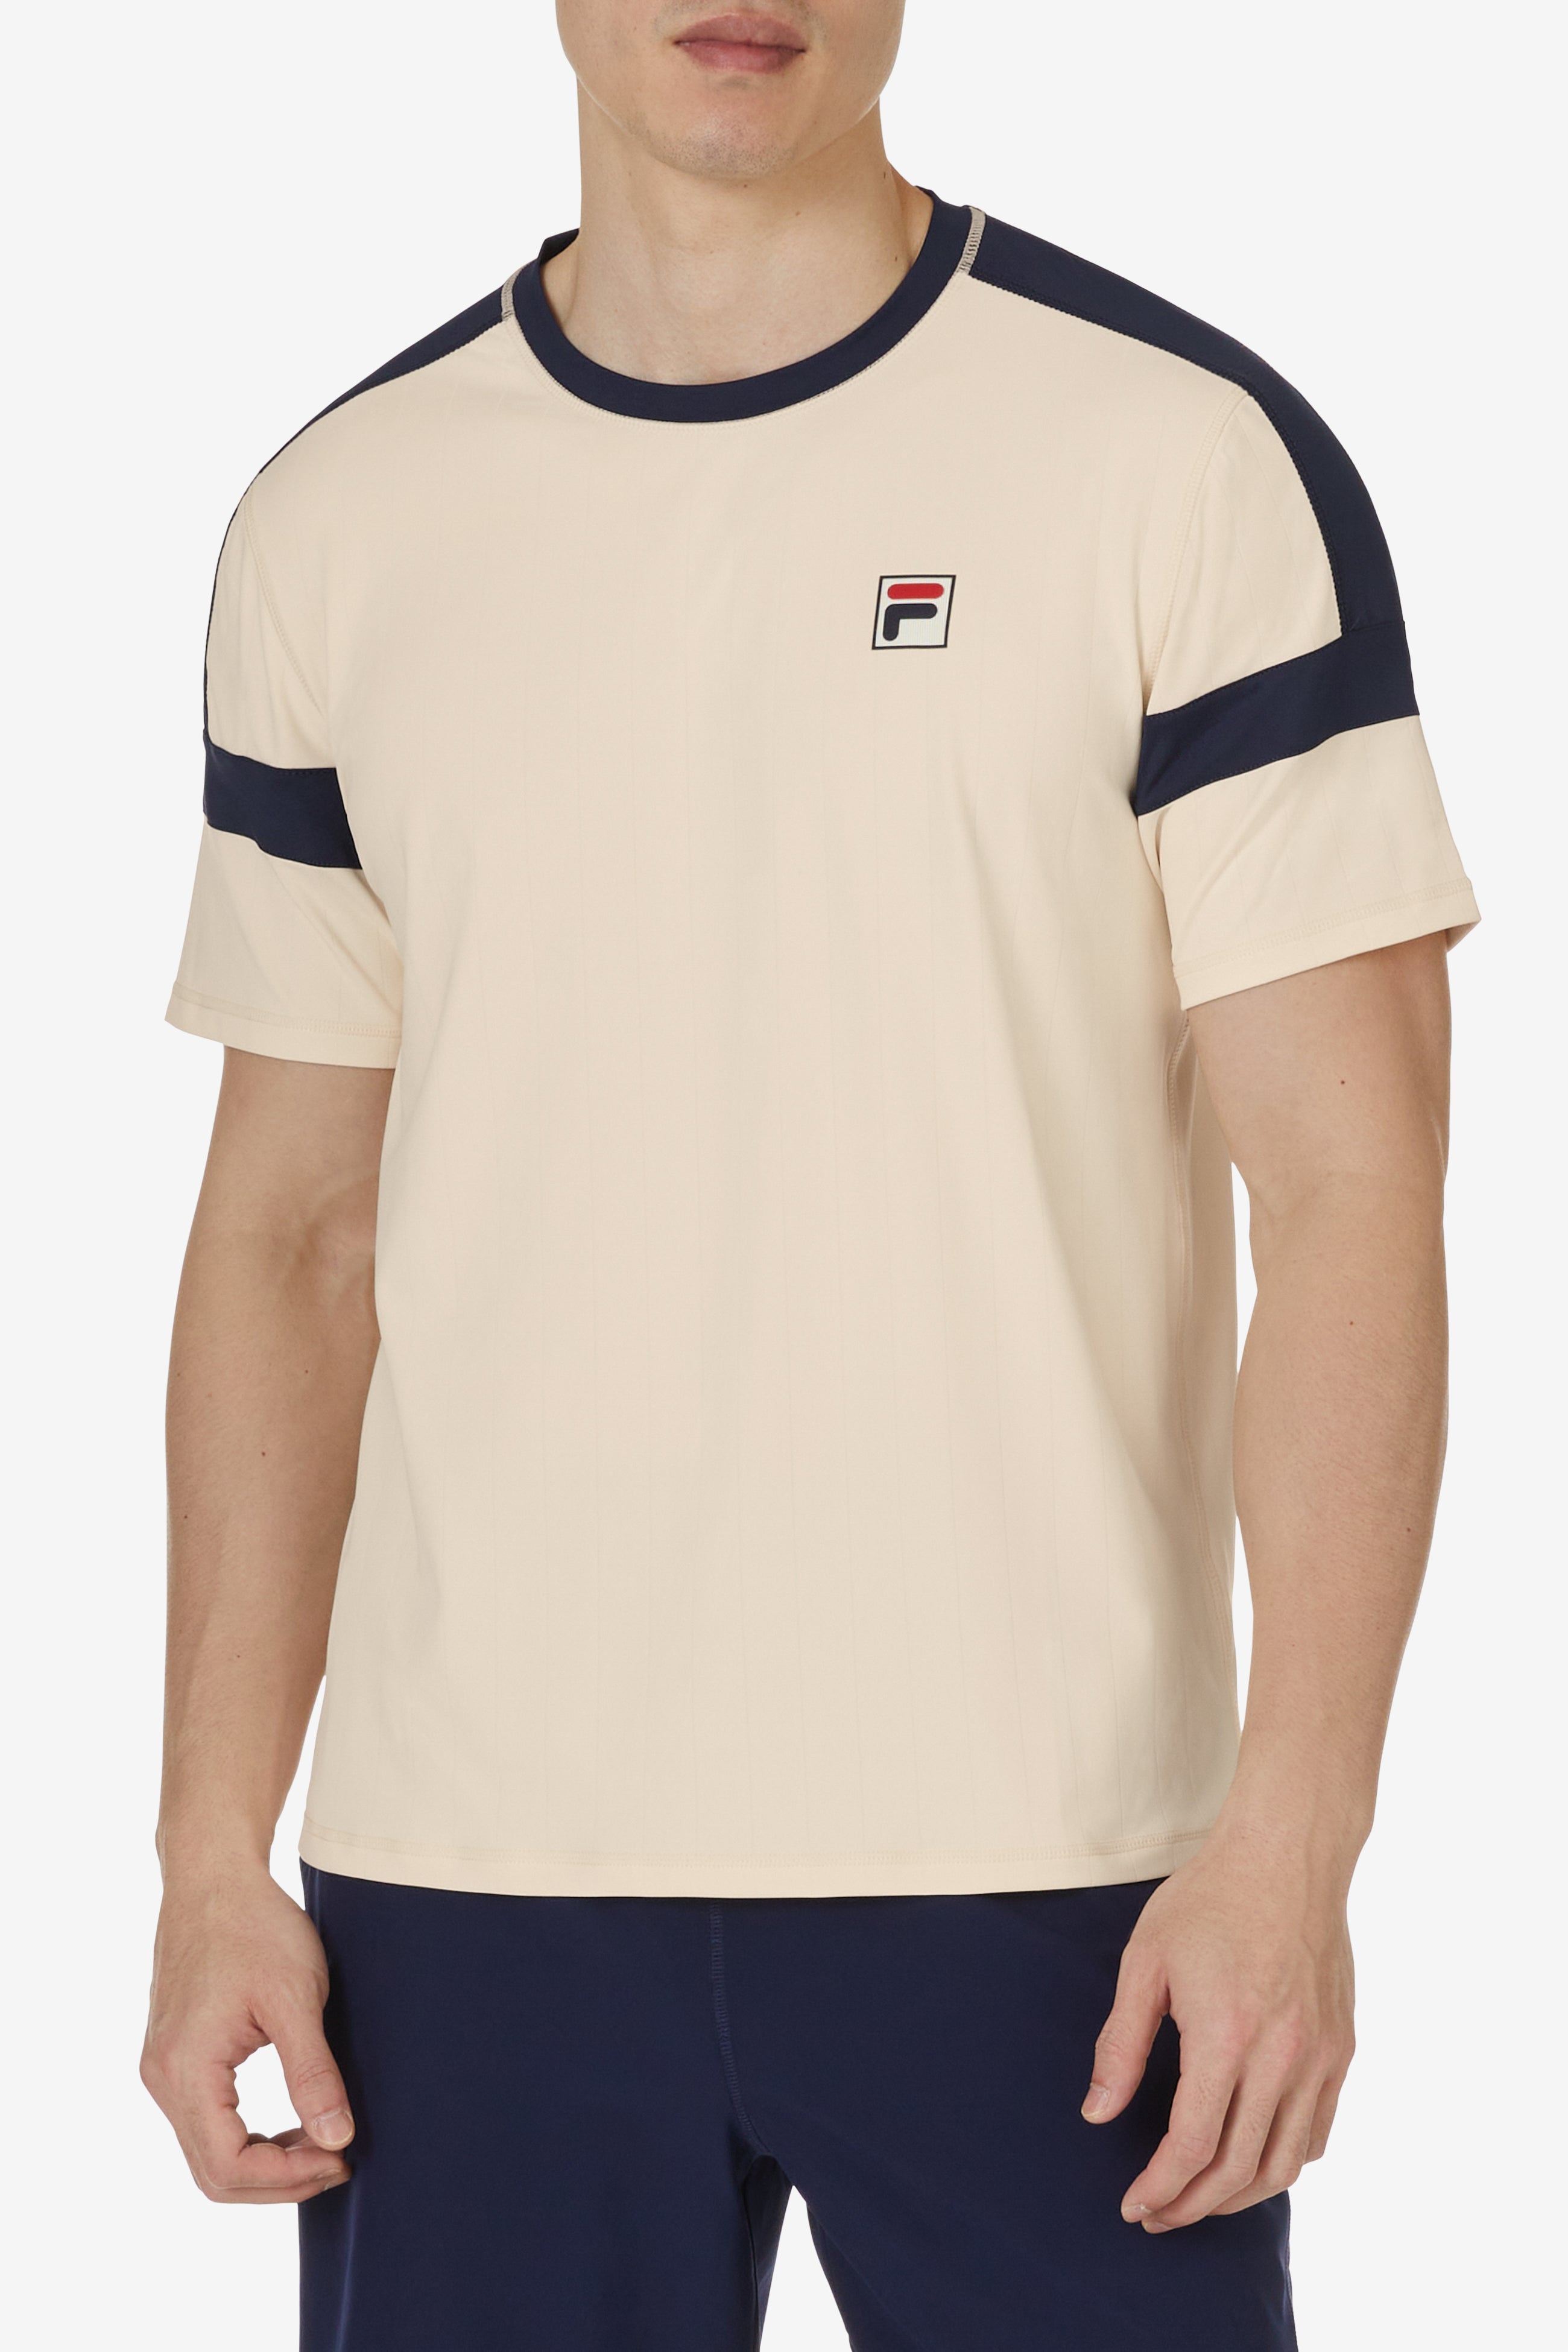 Pro Tennis Heritage Pin Stripe T-Shirt